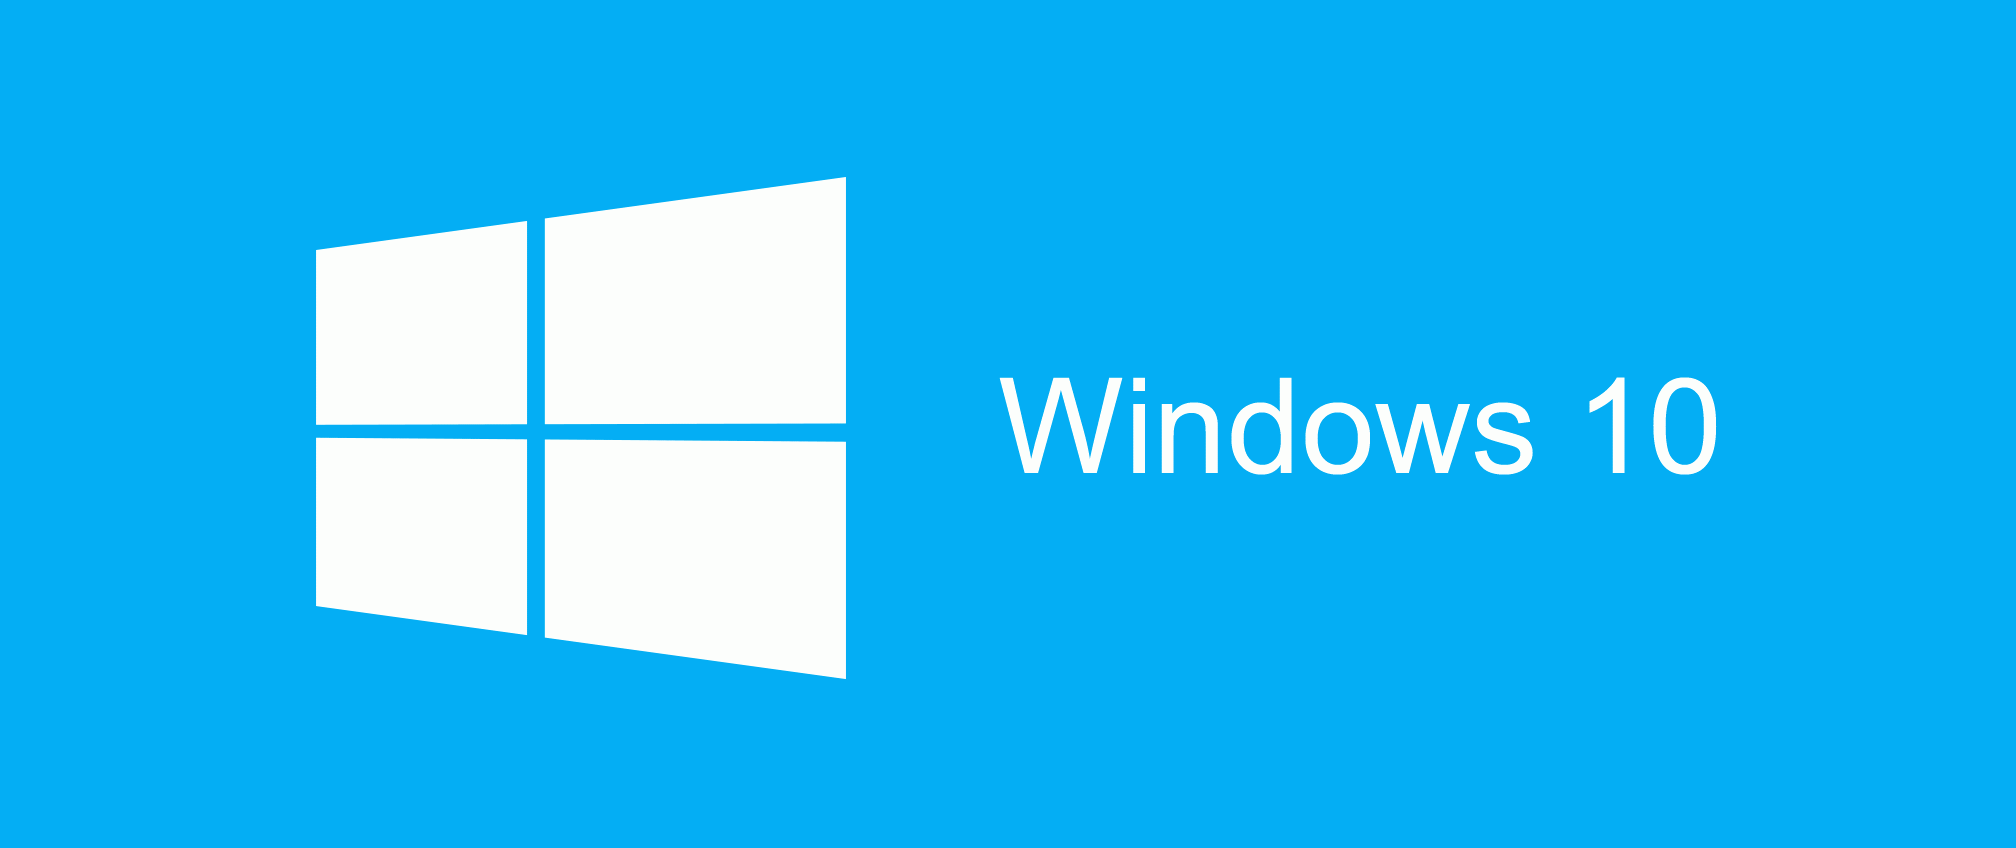 All Windows Logo - windows-10-logo - Case Financial